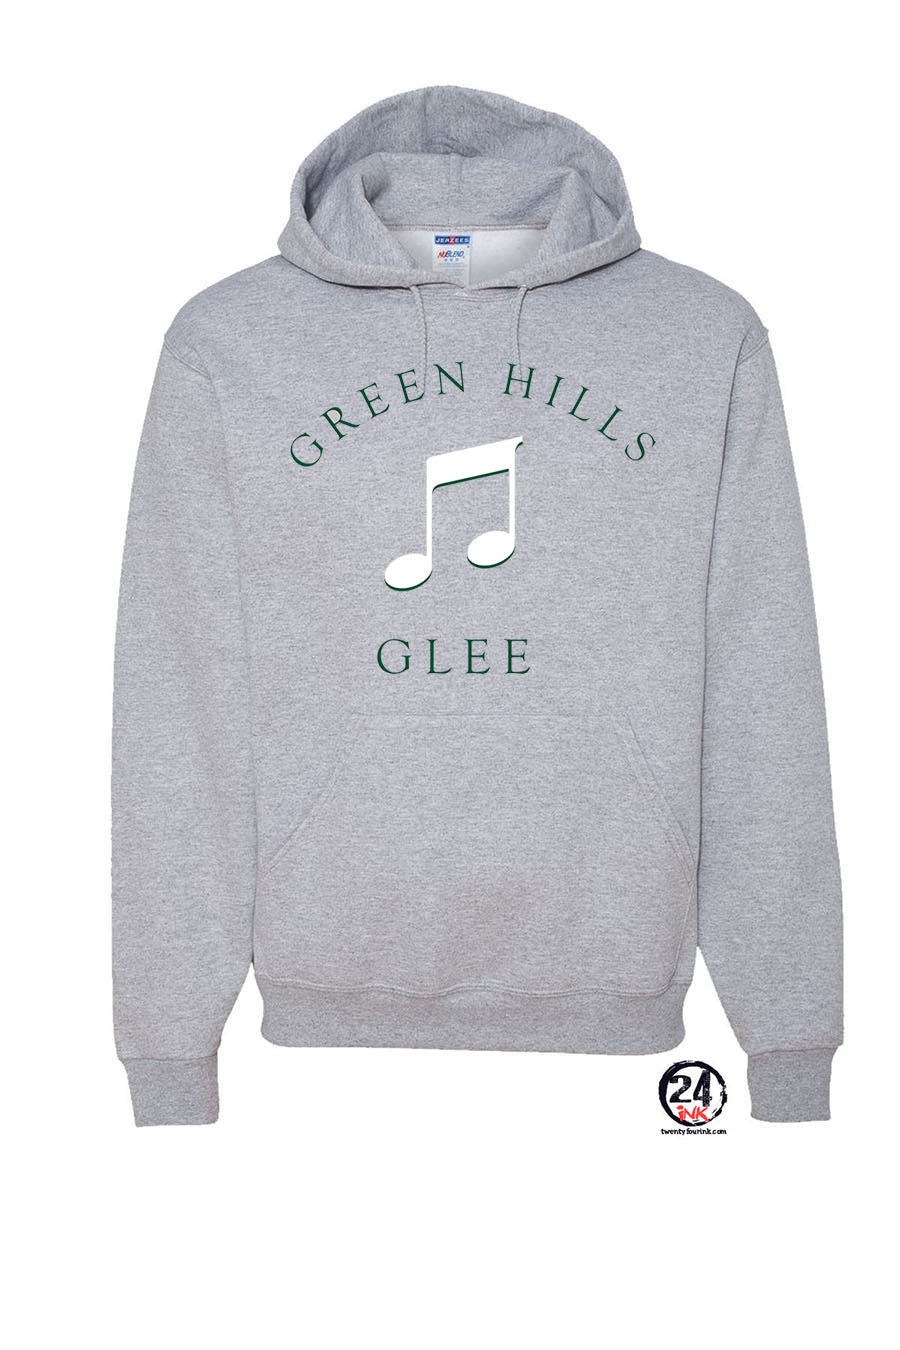 Green Hills Design 10 Hooded Sweatshirt